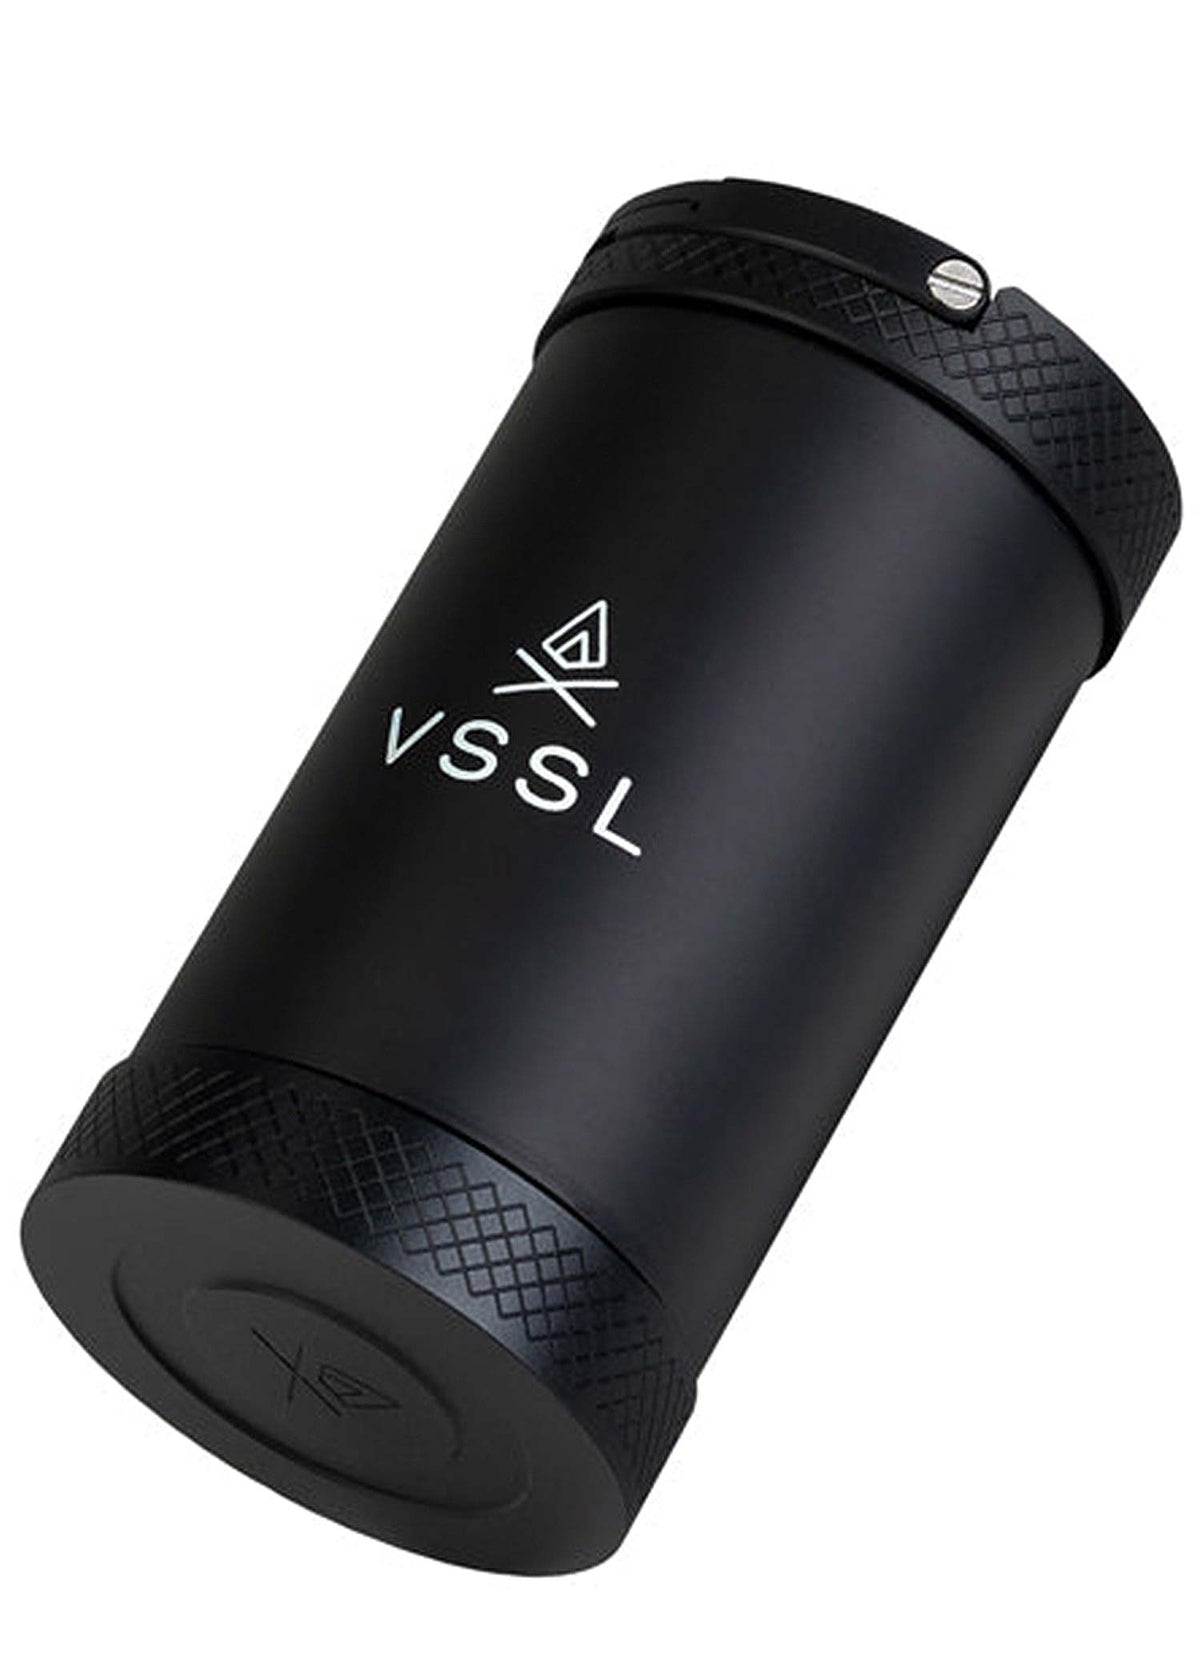 VSSL The Fix Kit Black